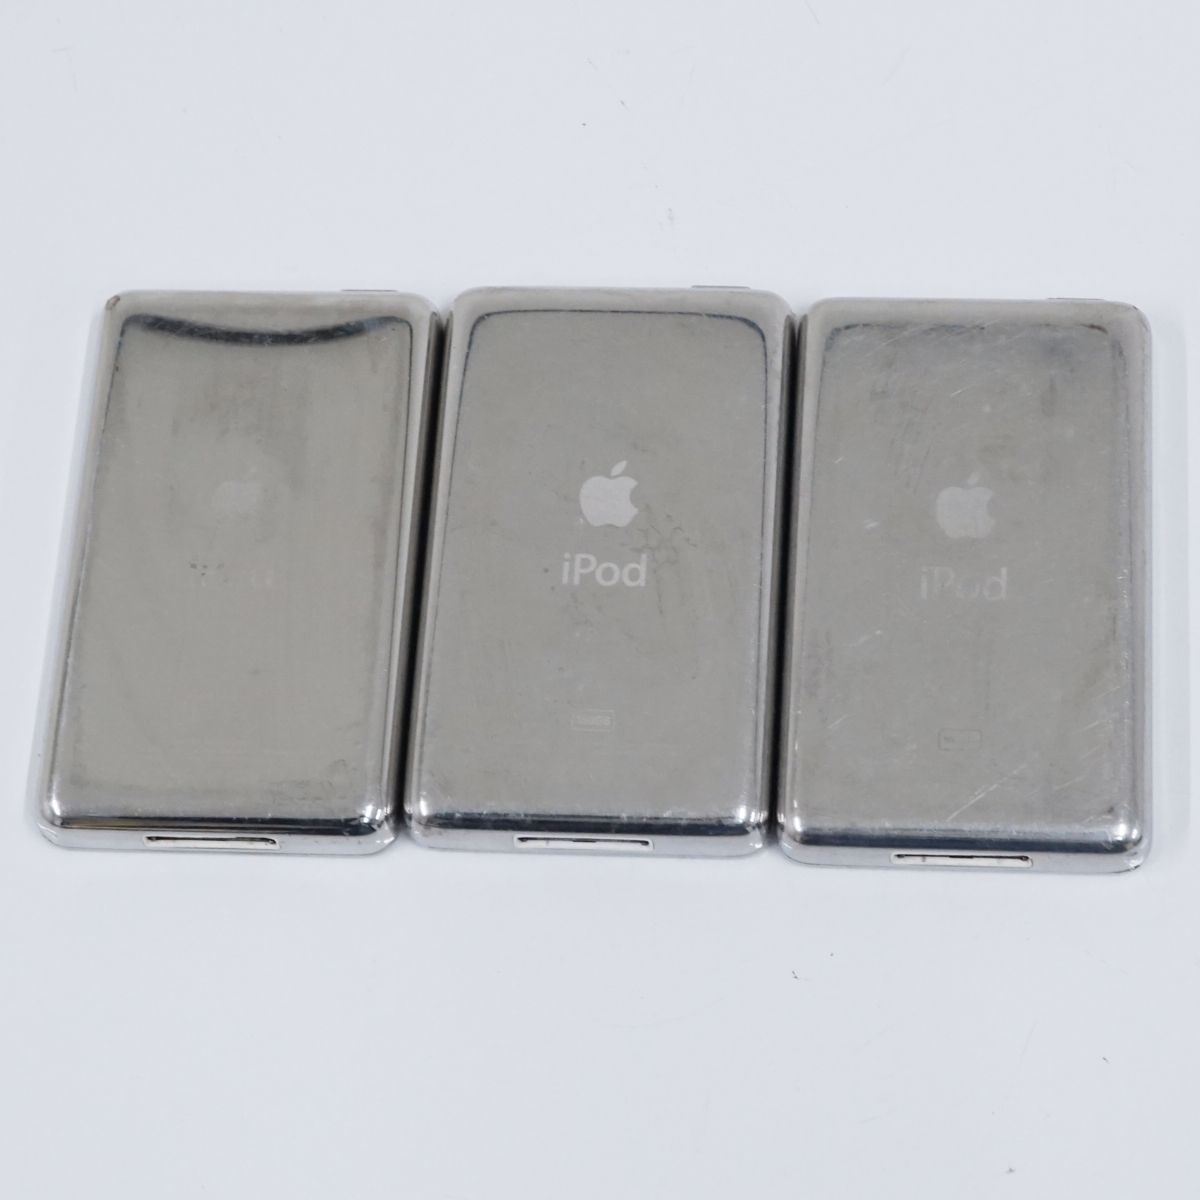 Apple アップル iPod アイポッド クラシック classic USED品 まとめて3個セット 動作未確認 【ジャンク】T V9544_画像5